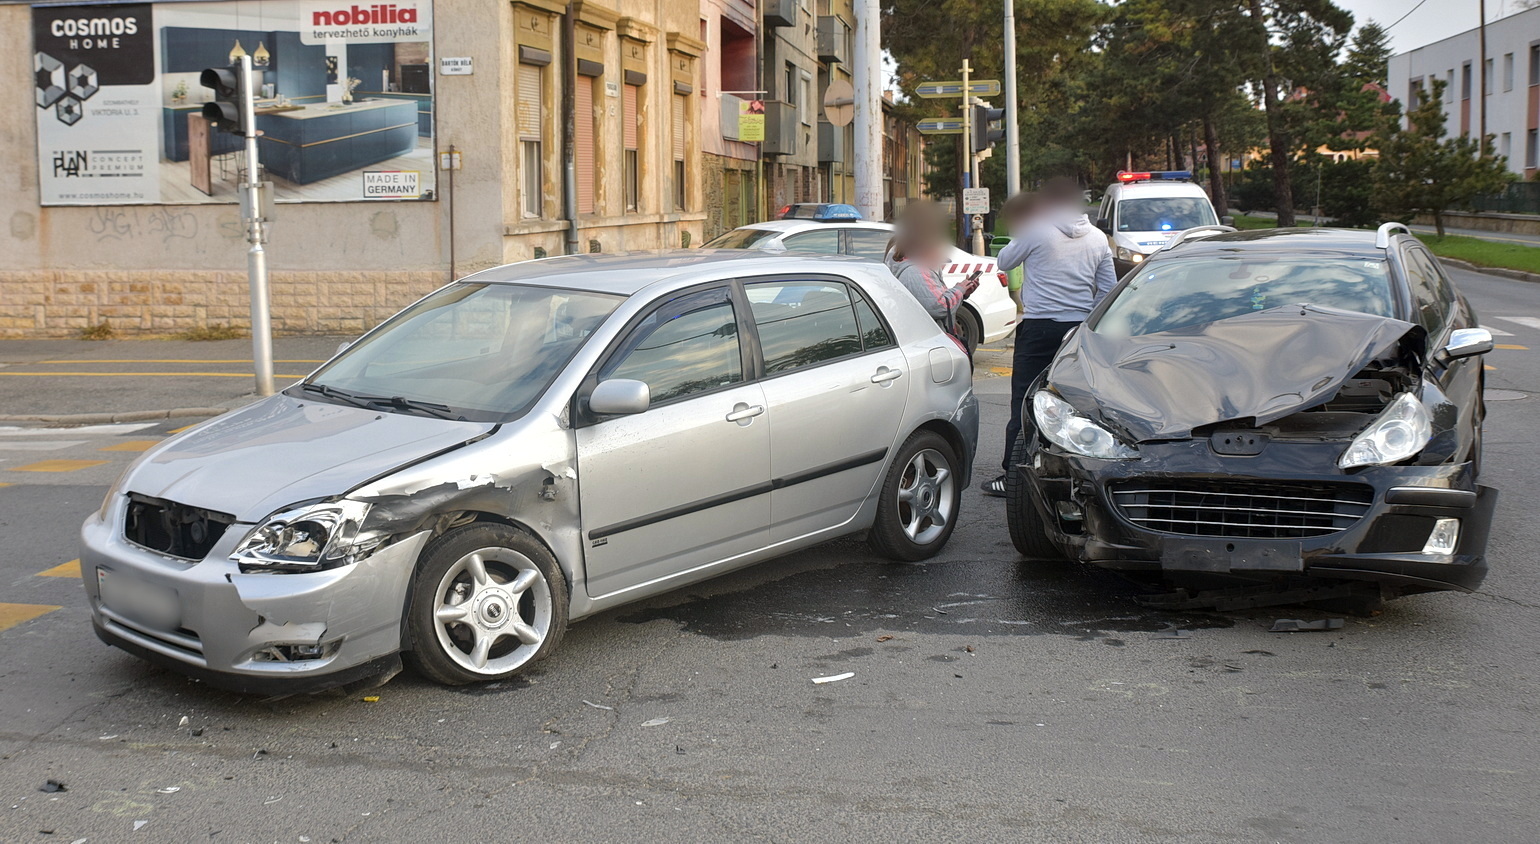 Újabb baleset a kórház sarkánál, Szombathelyen - Peugeot hajtott Toyota oldalába